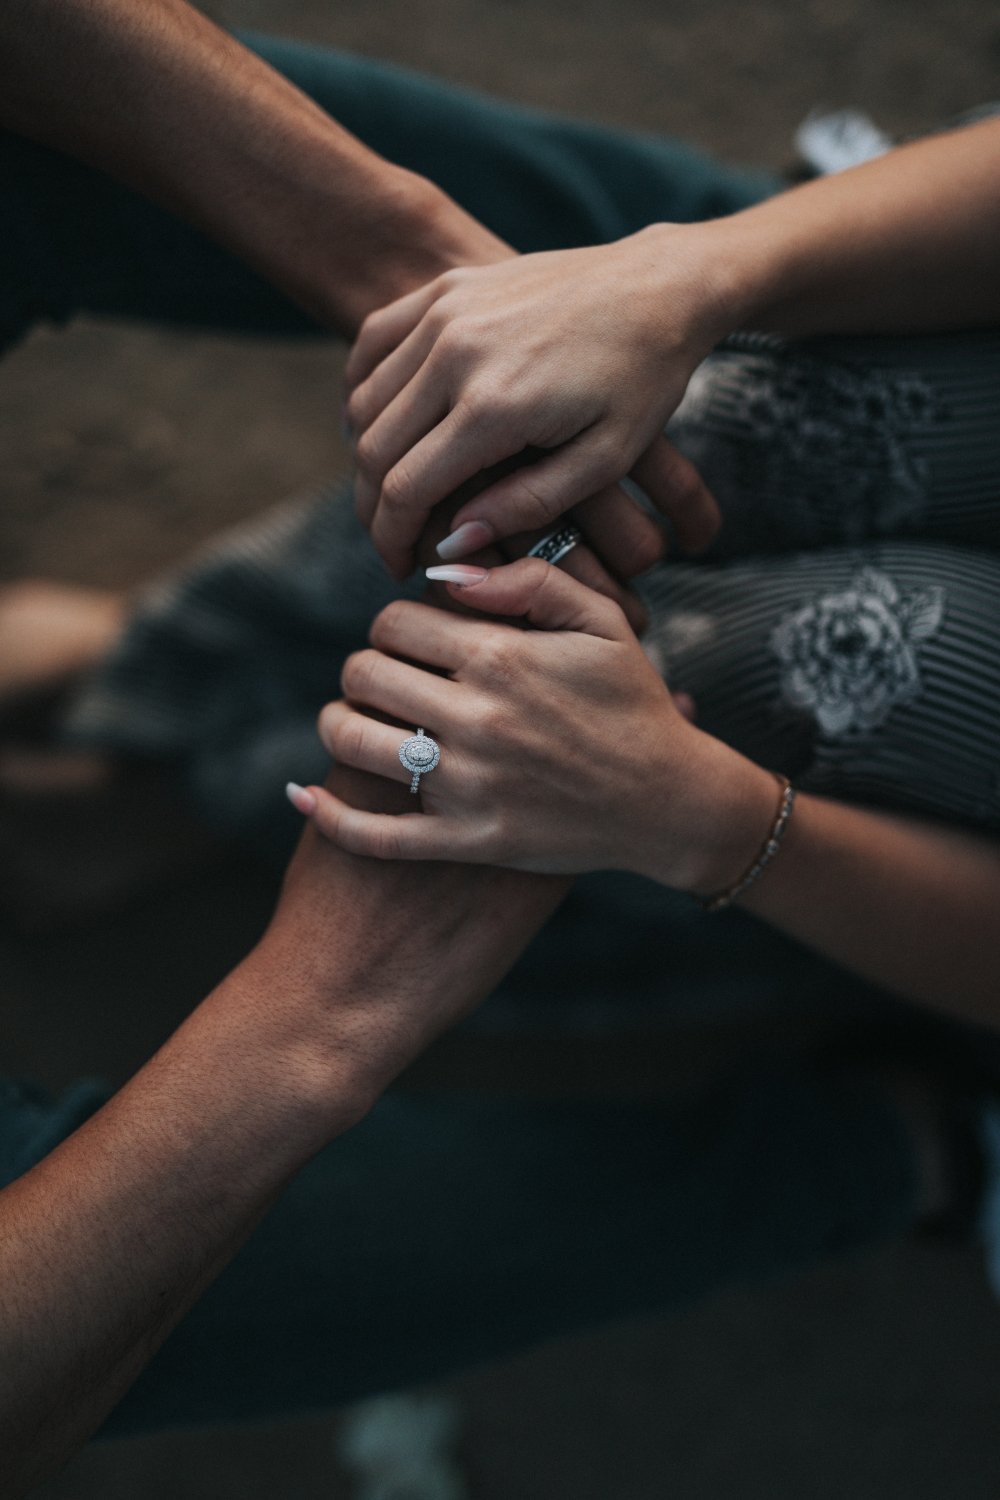 dos personas se sostienen las manos, una tiene uñas largas y un anillo en la mano izquierda, mientras que la otra persona tiene un anillo en la mano izquierda / tips para la depresión